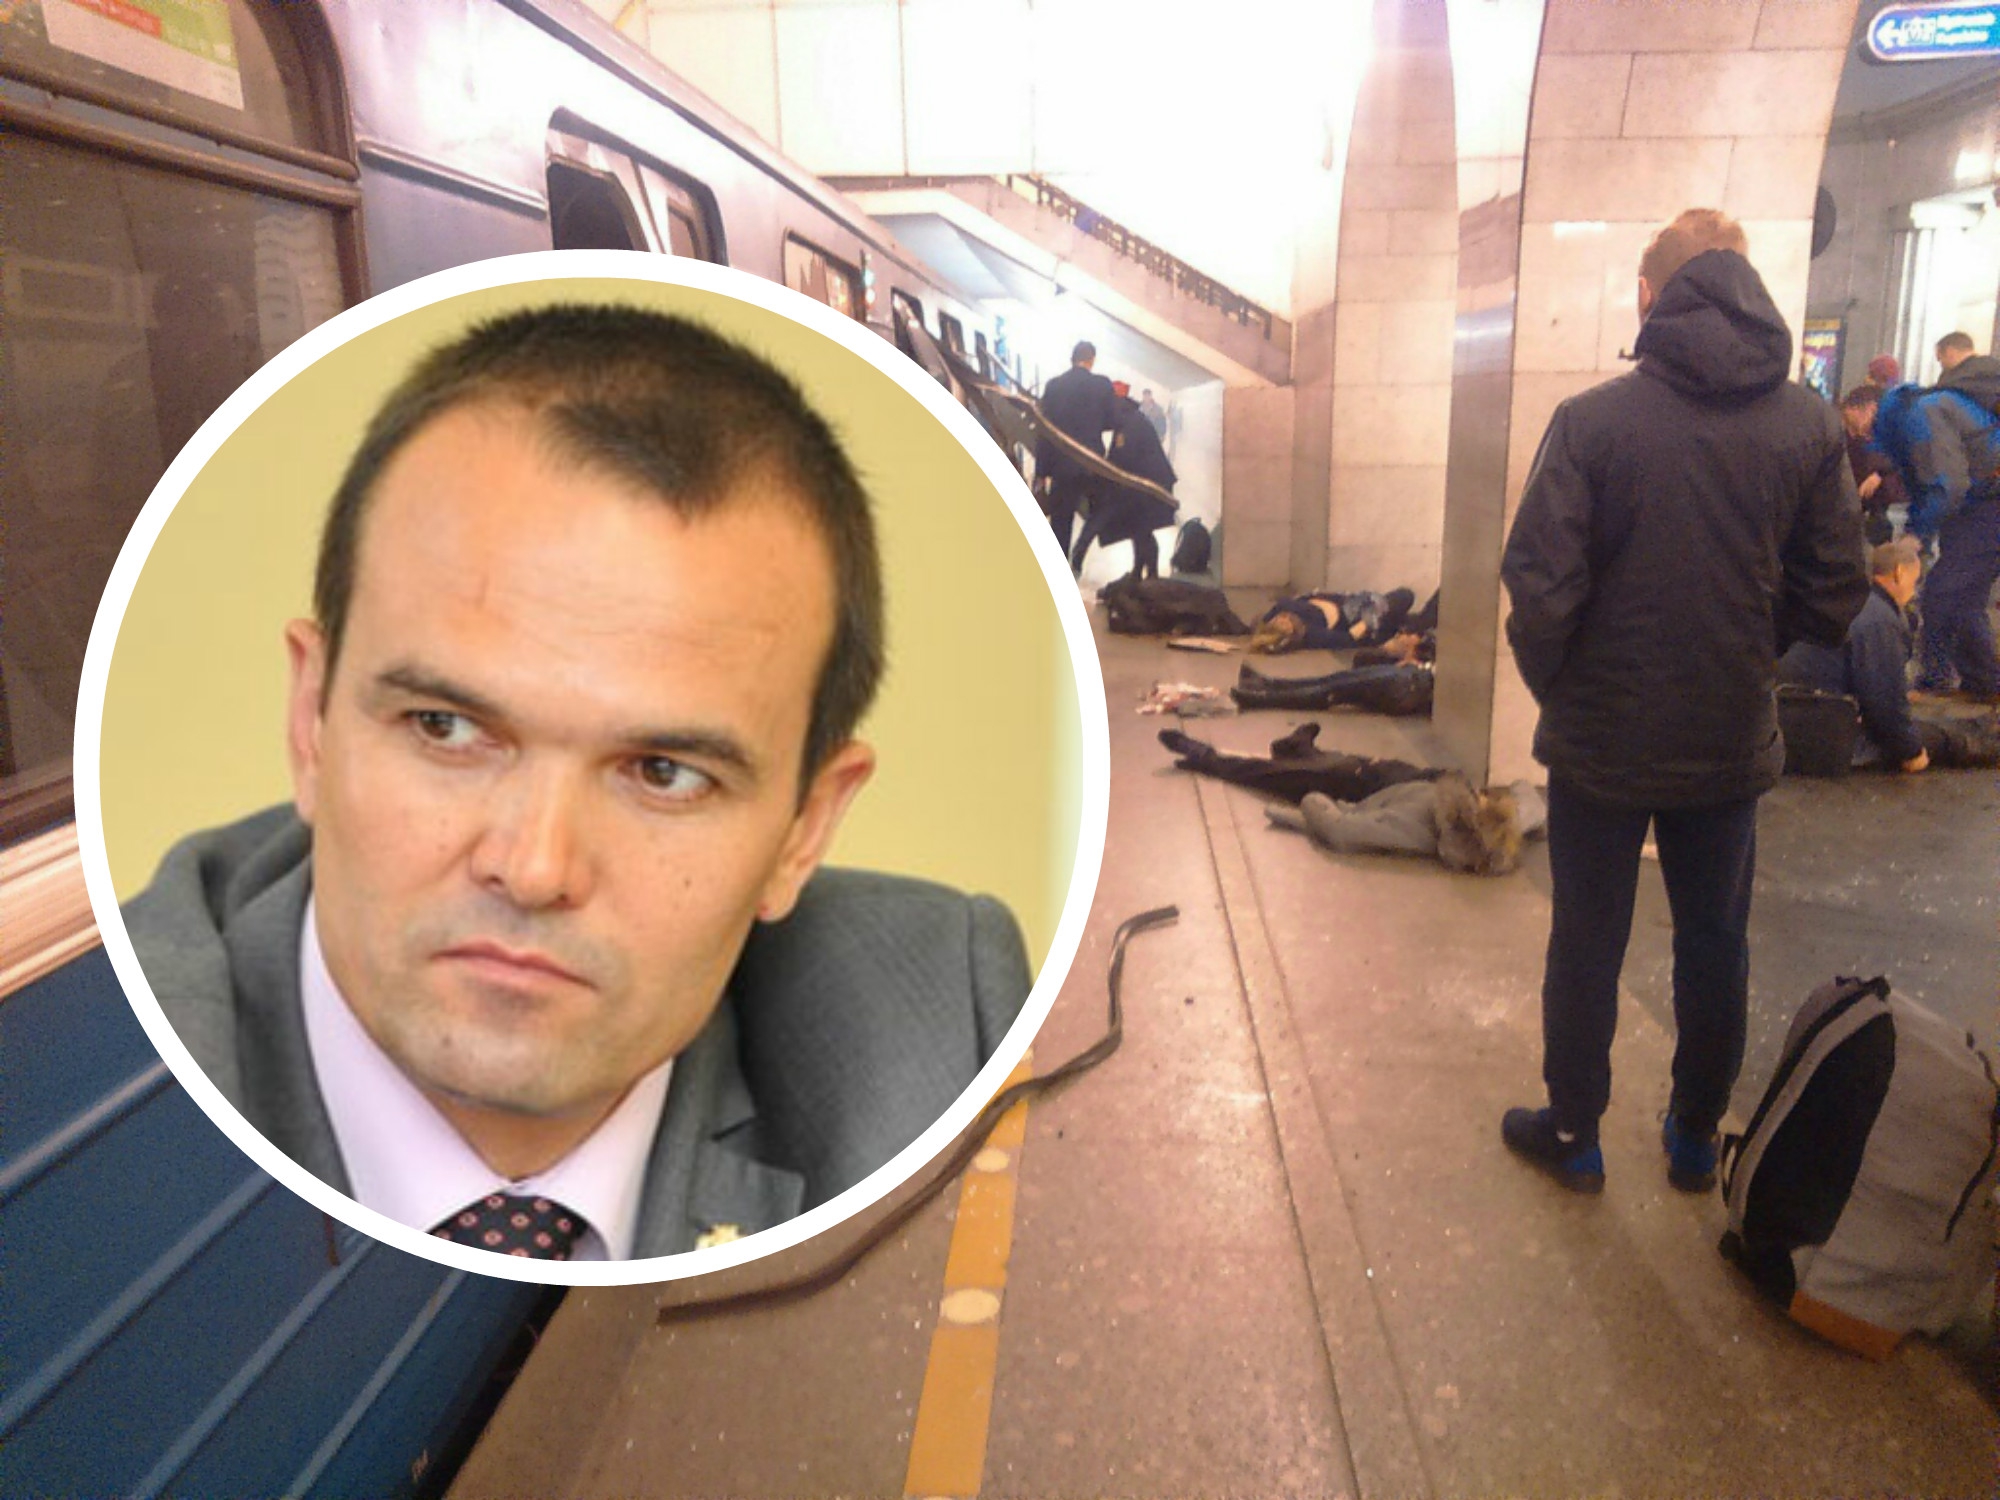 Игнатьев выразил соболезнование семьям погибших при взрыве в метро Санкт-Петербурга